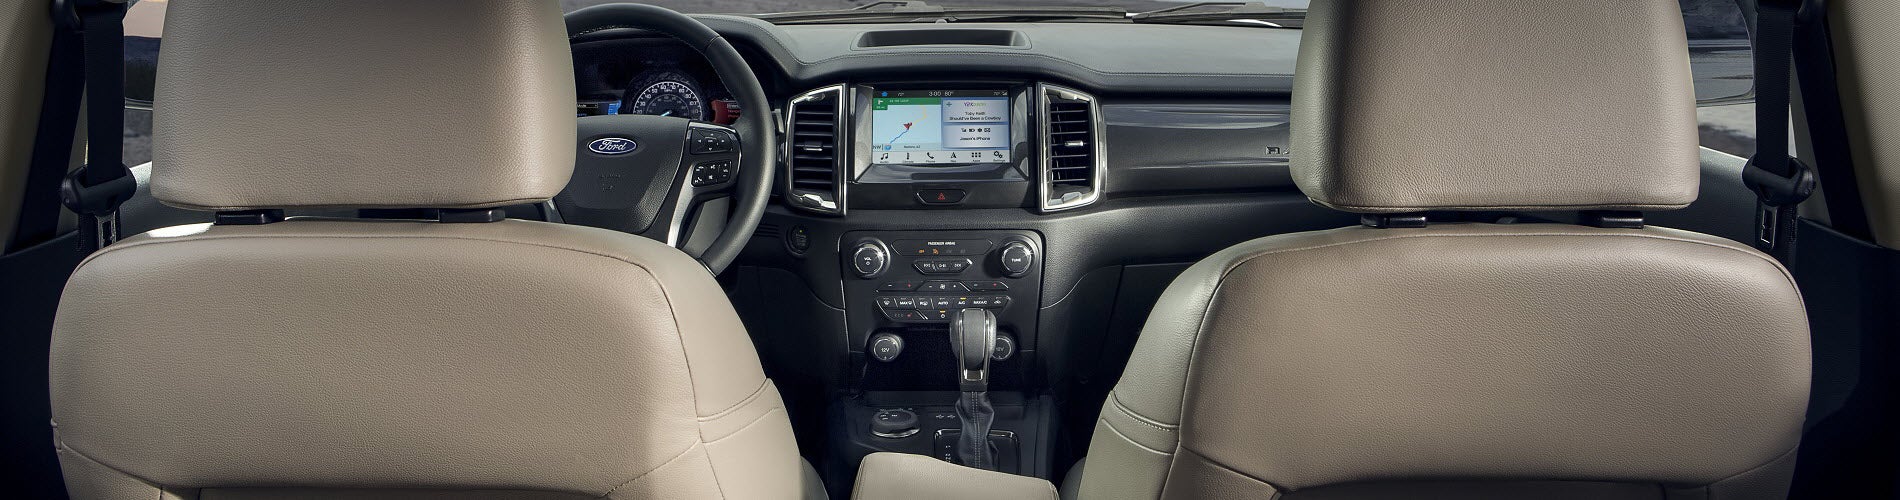 Ford Ranger Interior Technology